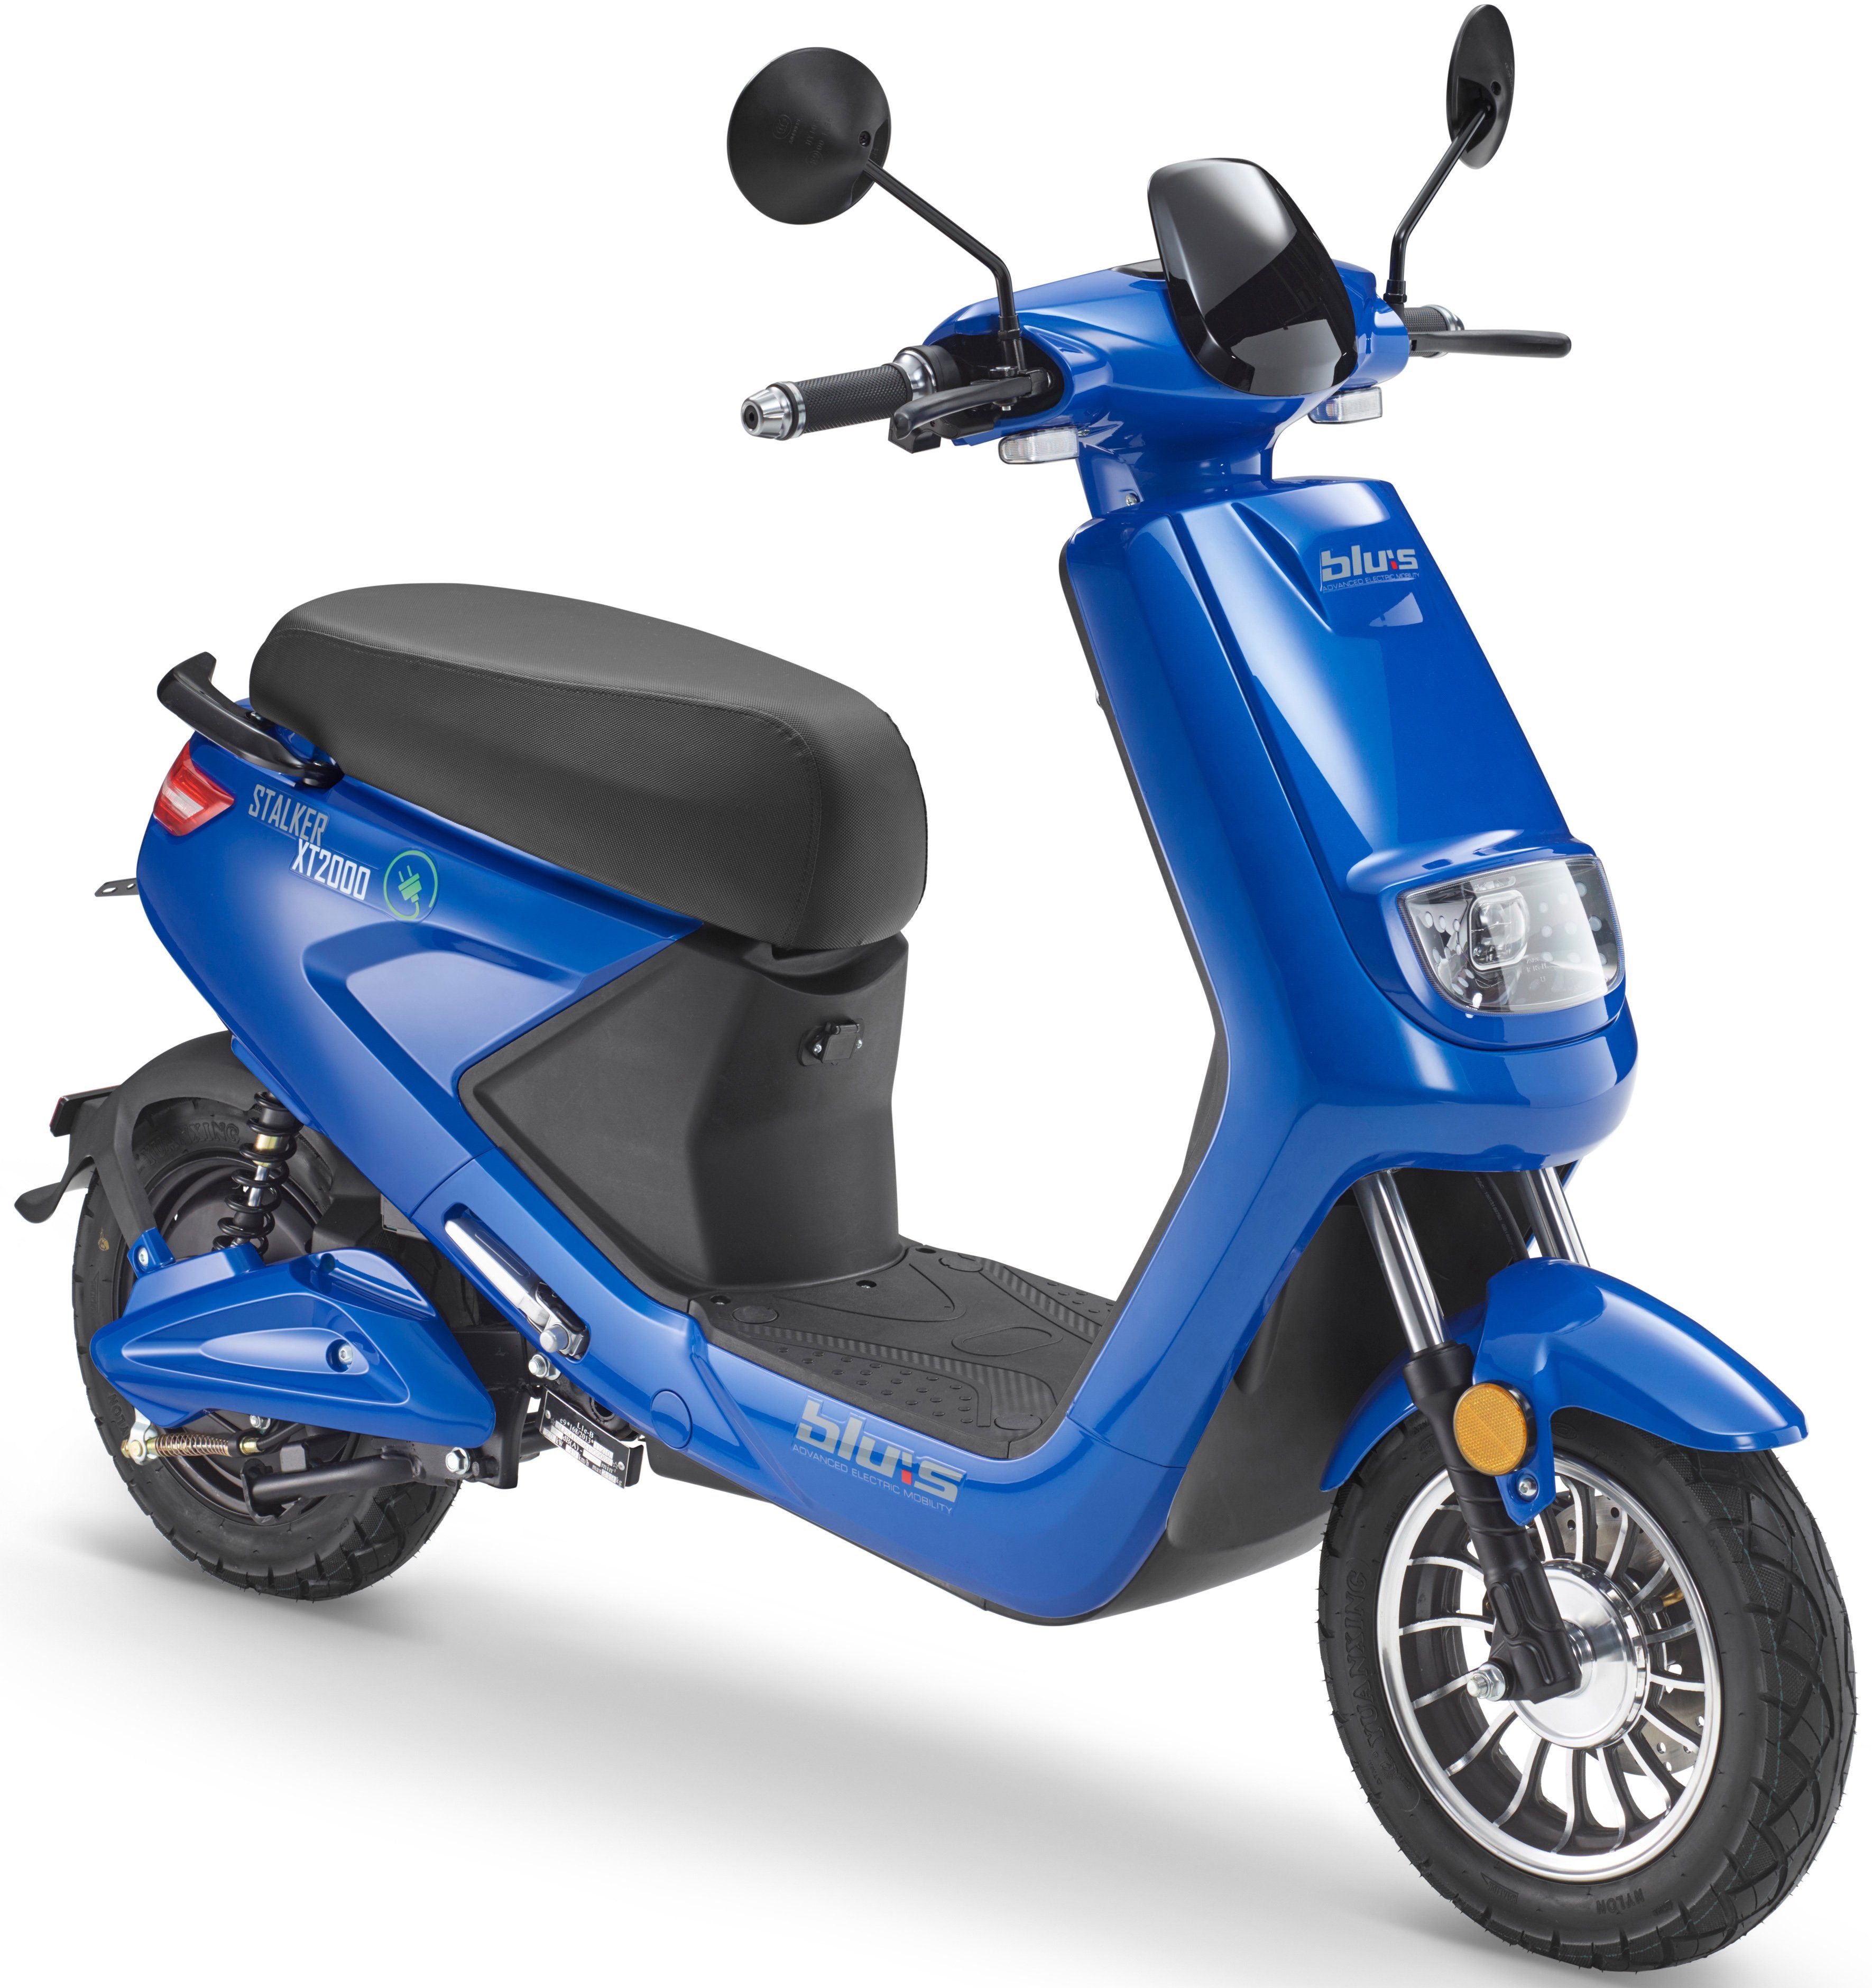 blau 45 XT2000, Blu:s E-Motorroller 2000 km/h W,